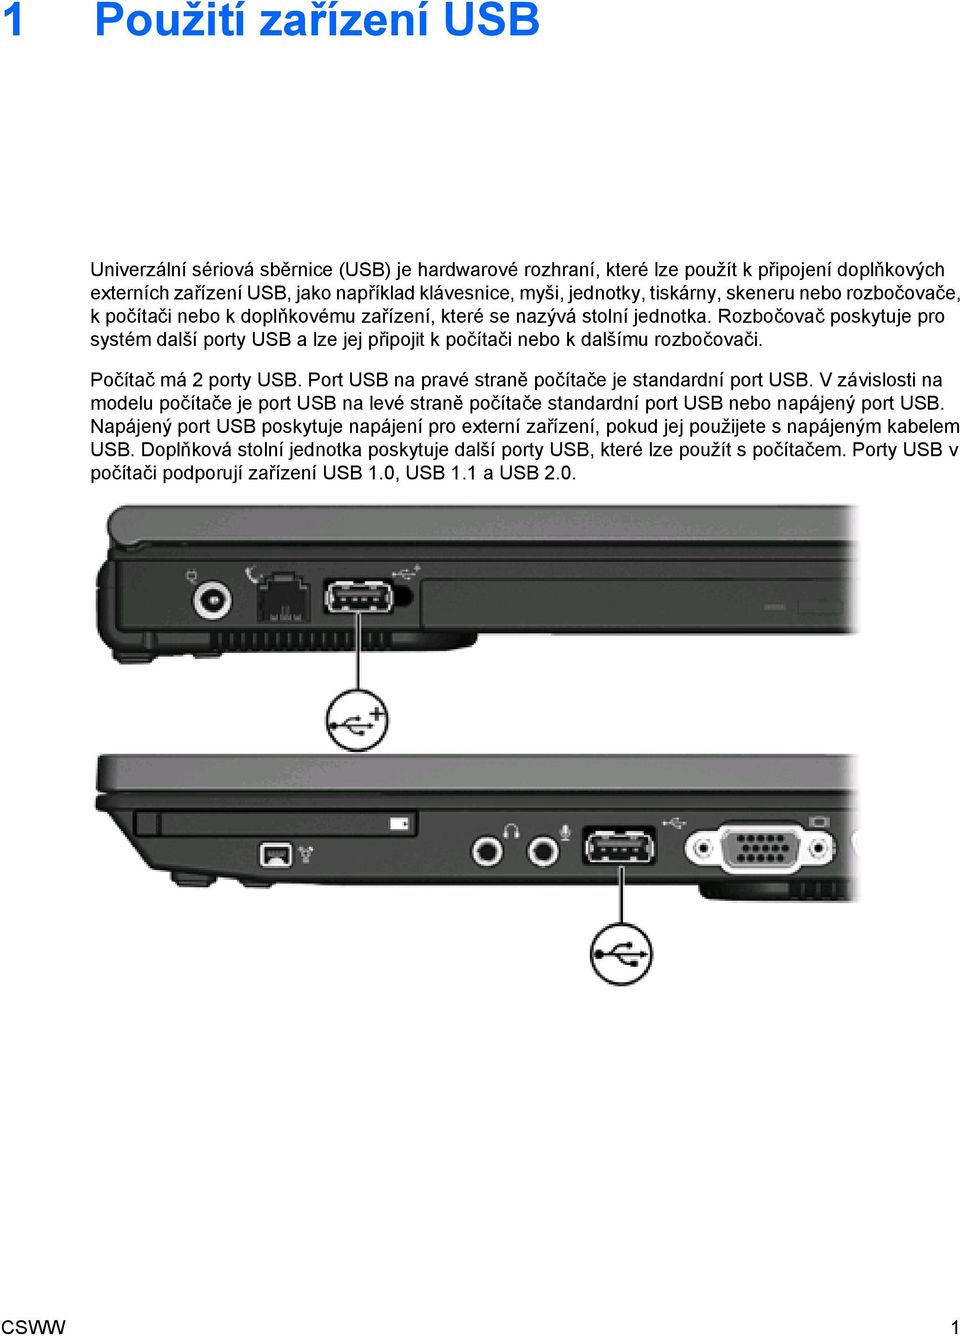 Rozbočovač poskytuje pro systém další porty USB a lze jej připojit k počítači nebo k dalšímu rozbočovači. Počítač má 2 porty USB. Port USB na pravé straně počítače je standardní port USB.